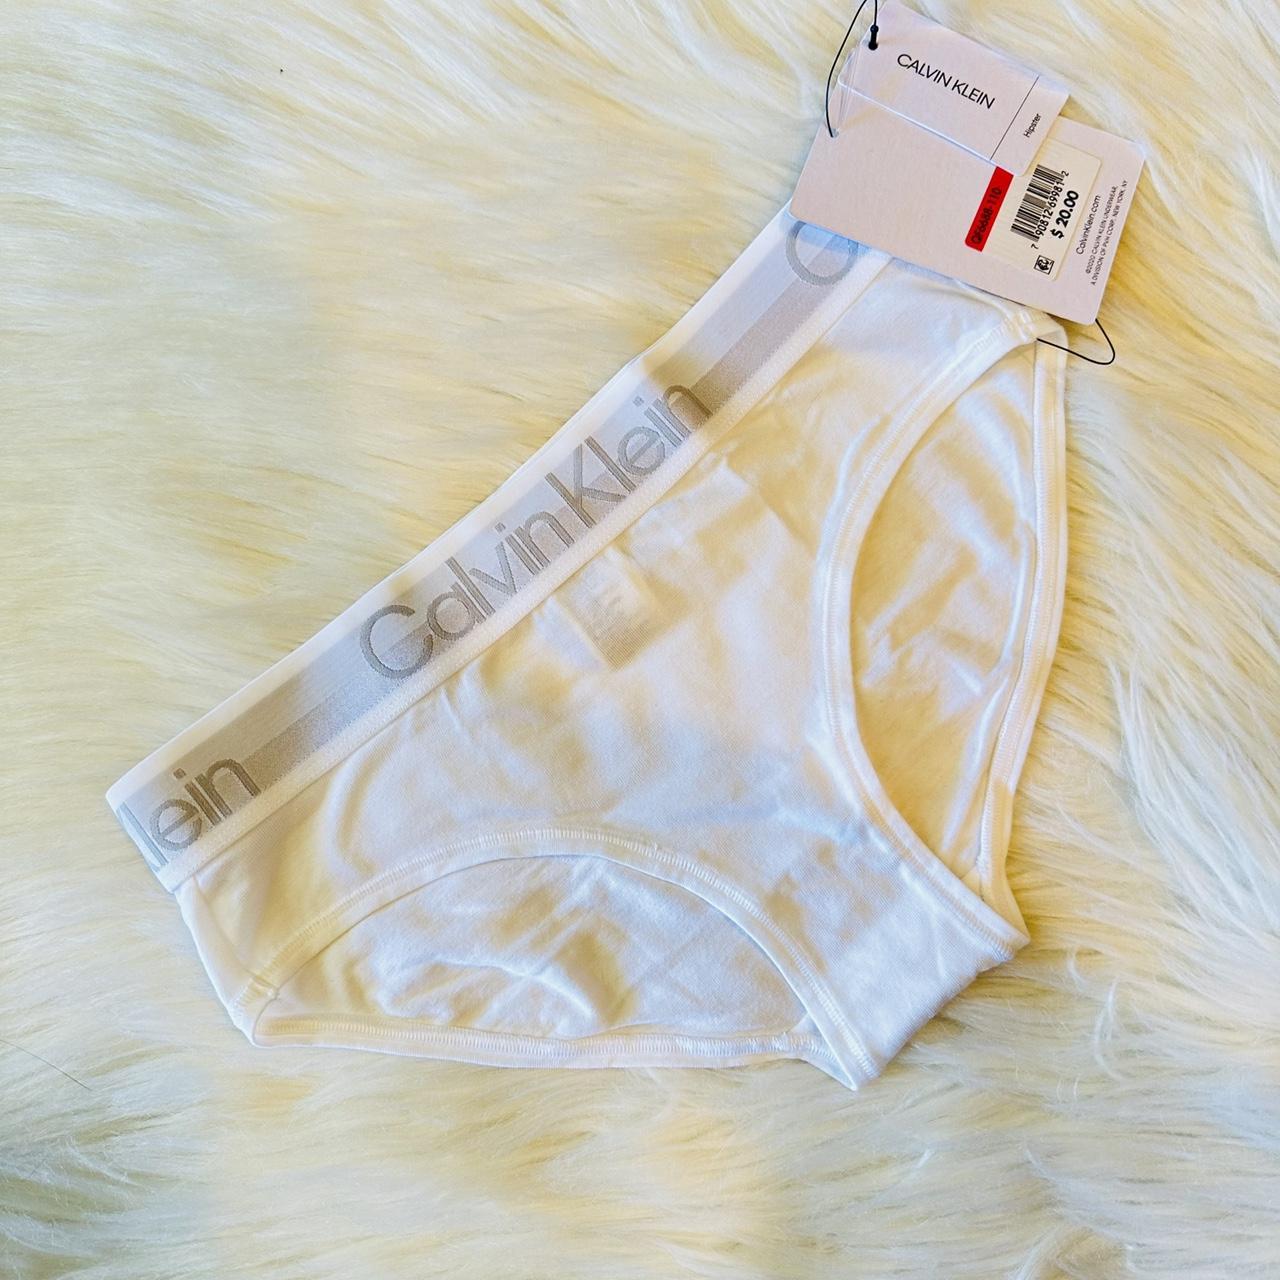 Calvin Klein Thick Band Underwear!, Brand new with